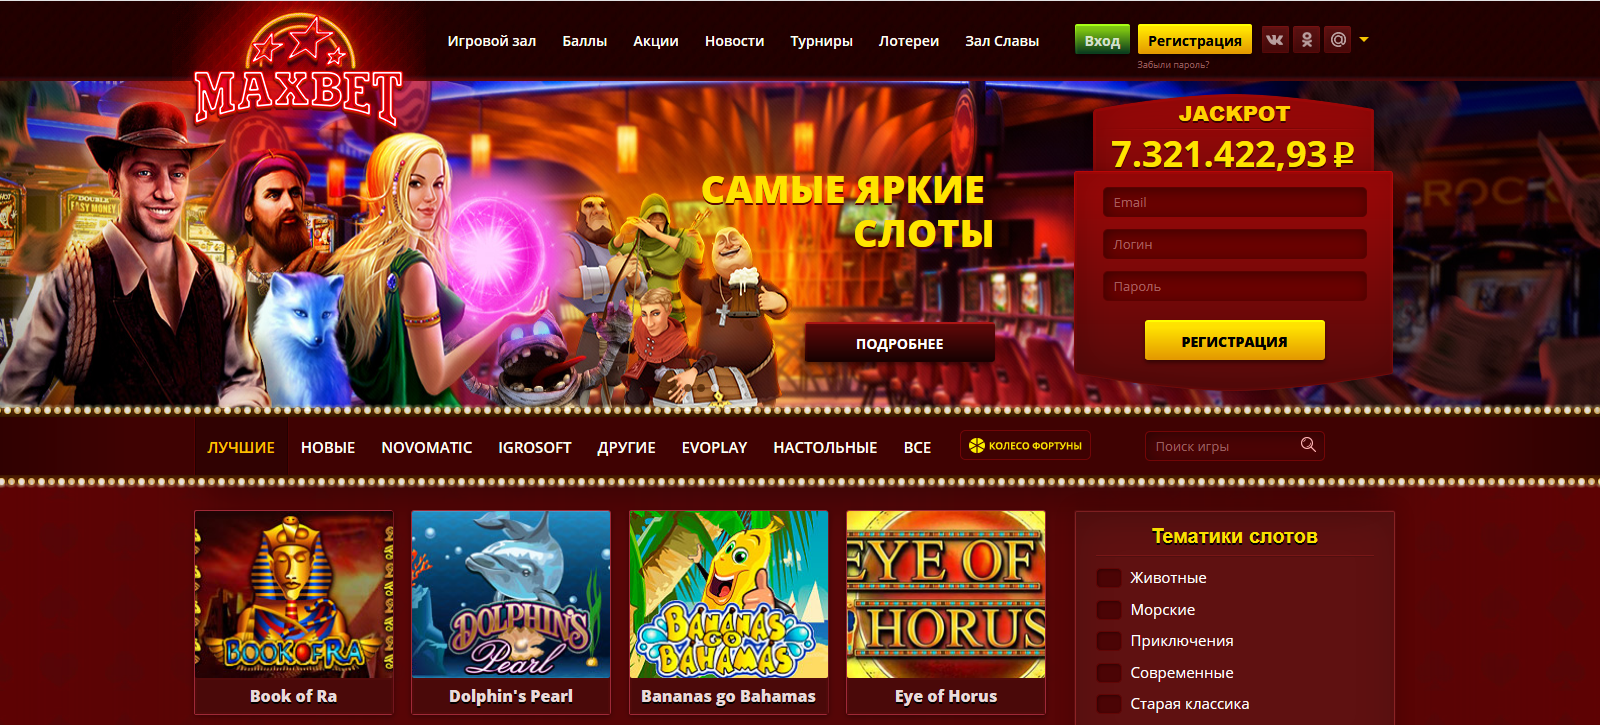 Официальный сайт казино Максбет 🏆 Игровые автоматы на реальные деньги